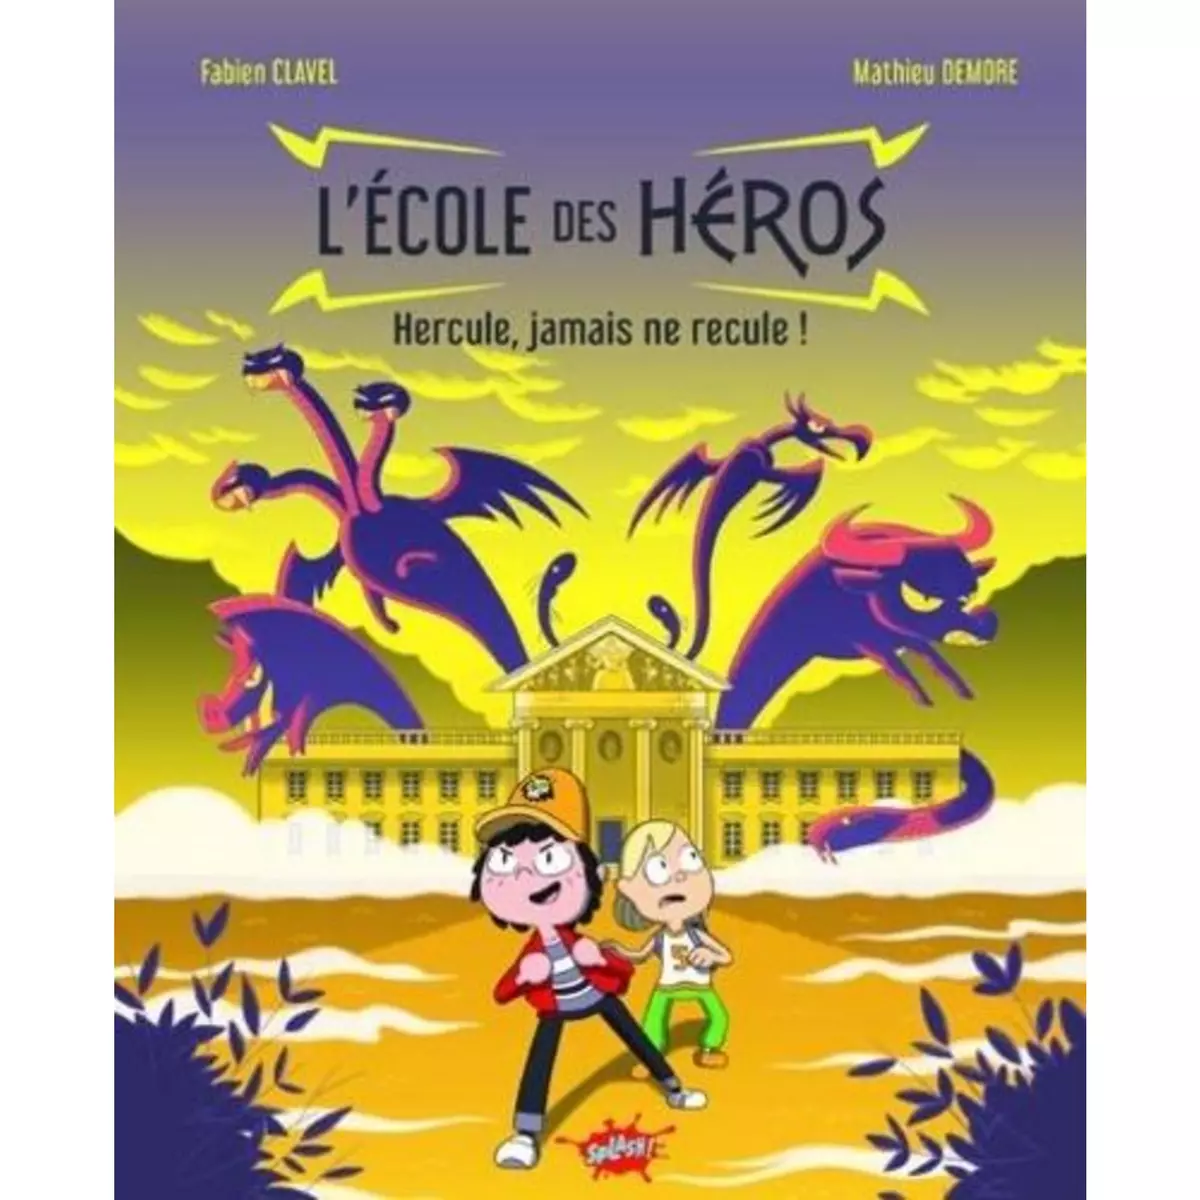  L'ECOLE DES HEROS. HERCULE, JAMAIS NE RECULE !, Clavel Fabien